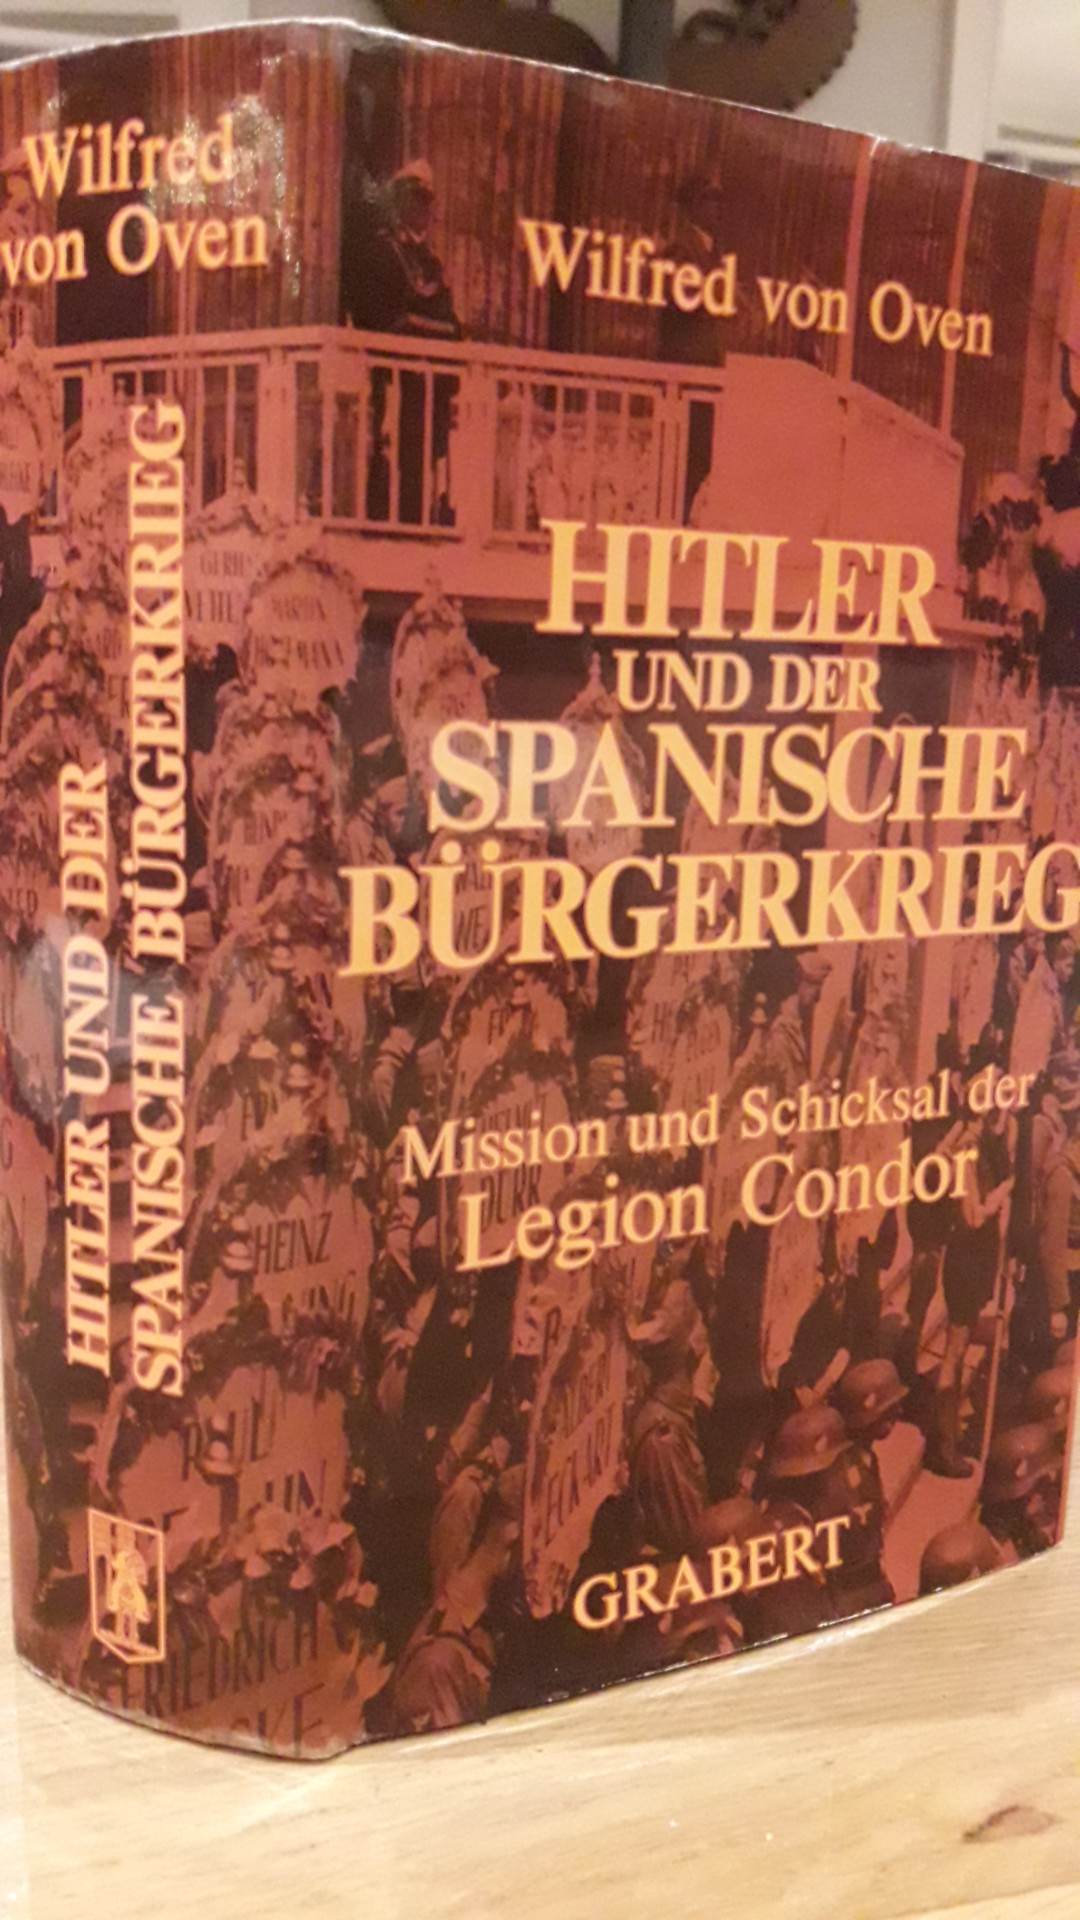 Hitler und der Spanische burgerkrieg , Legion Condor / Wilfred von Oven - 560 blz